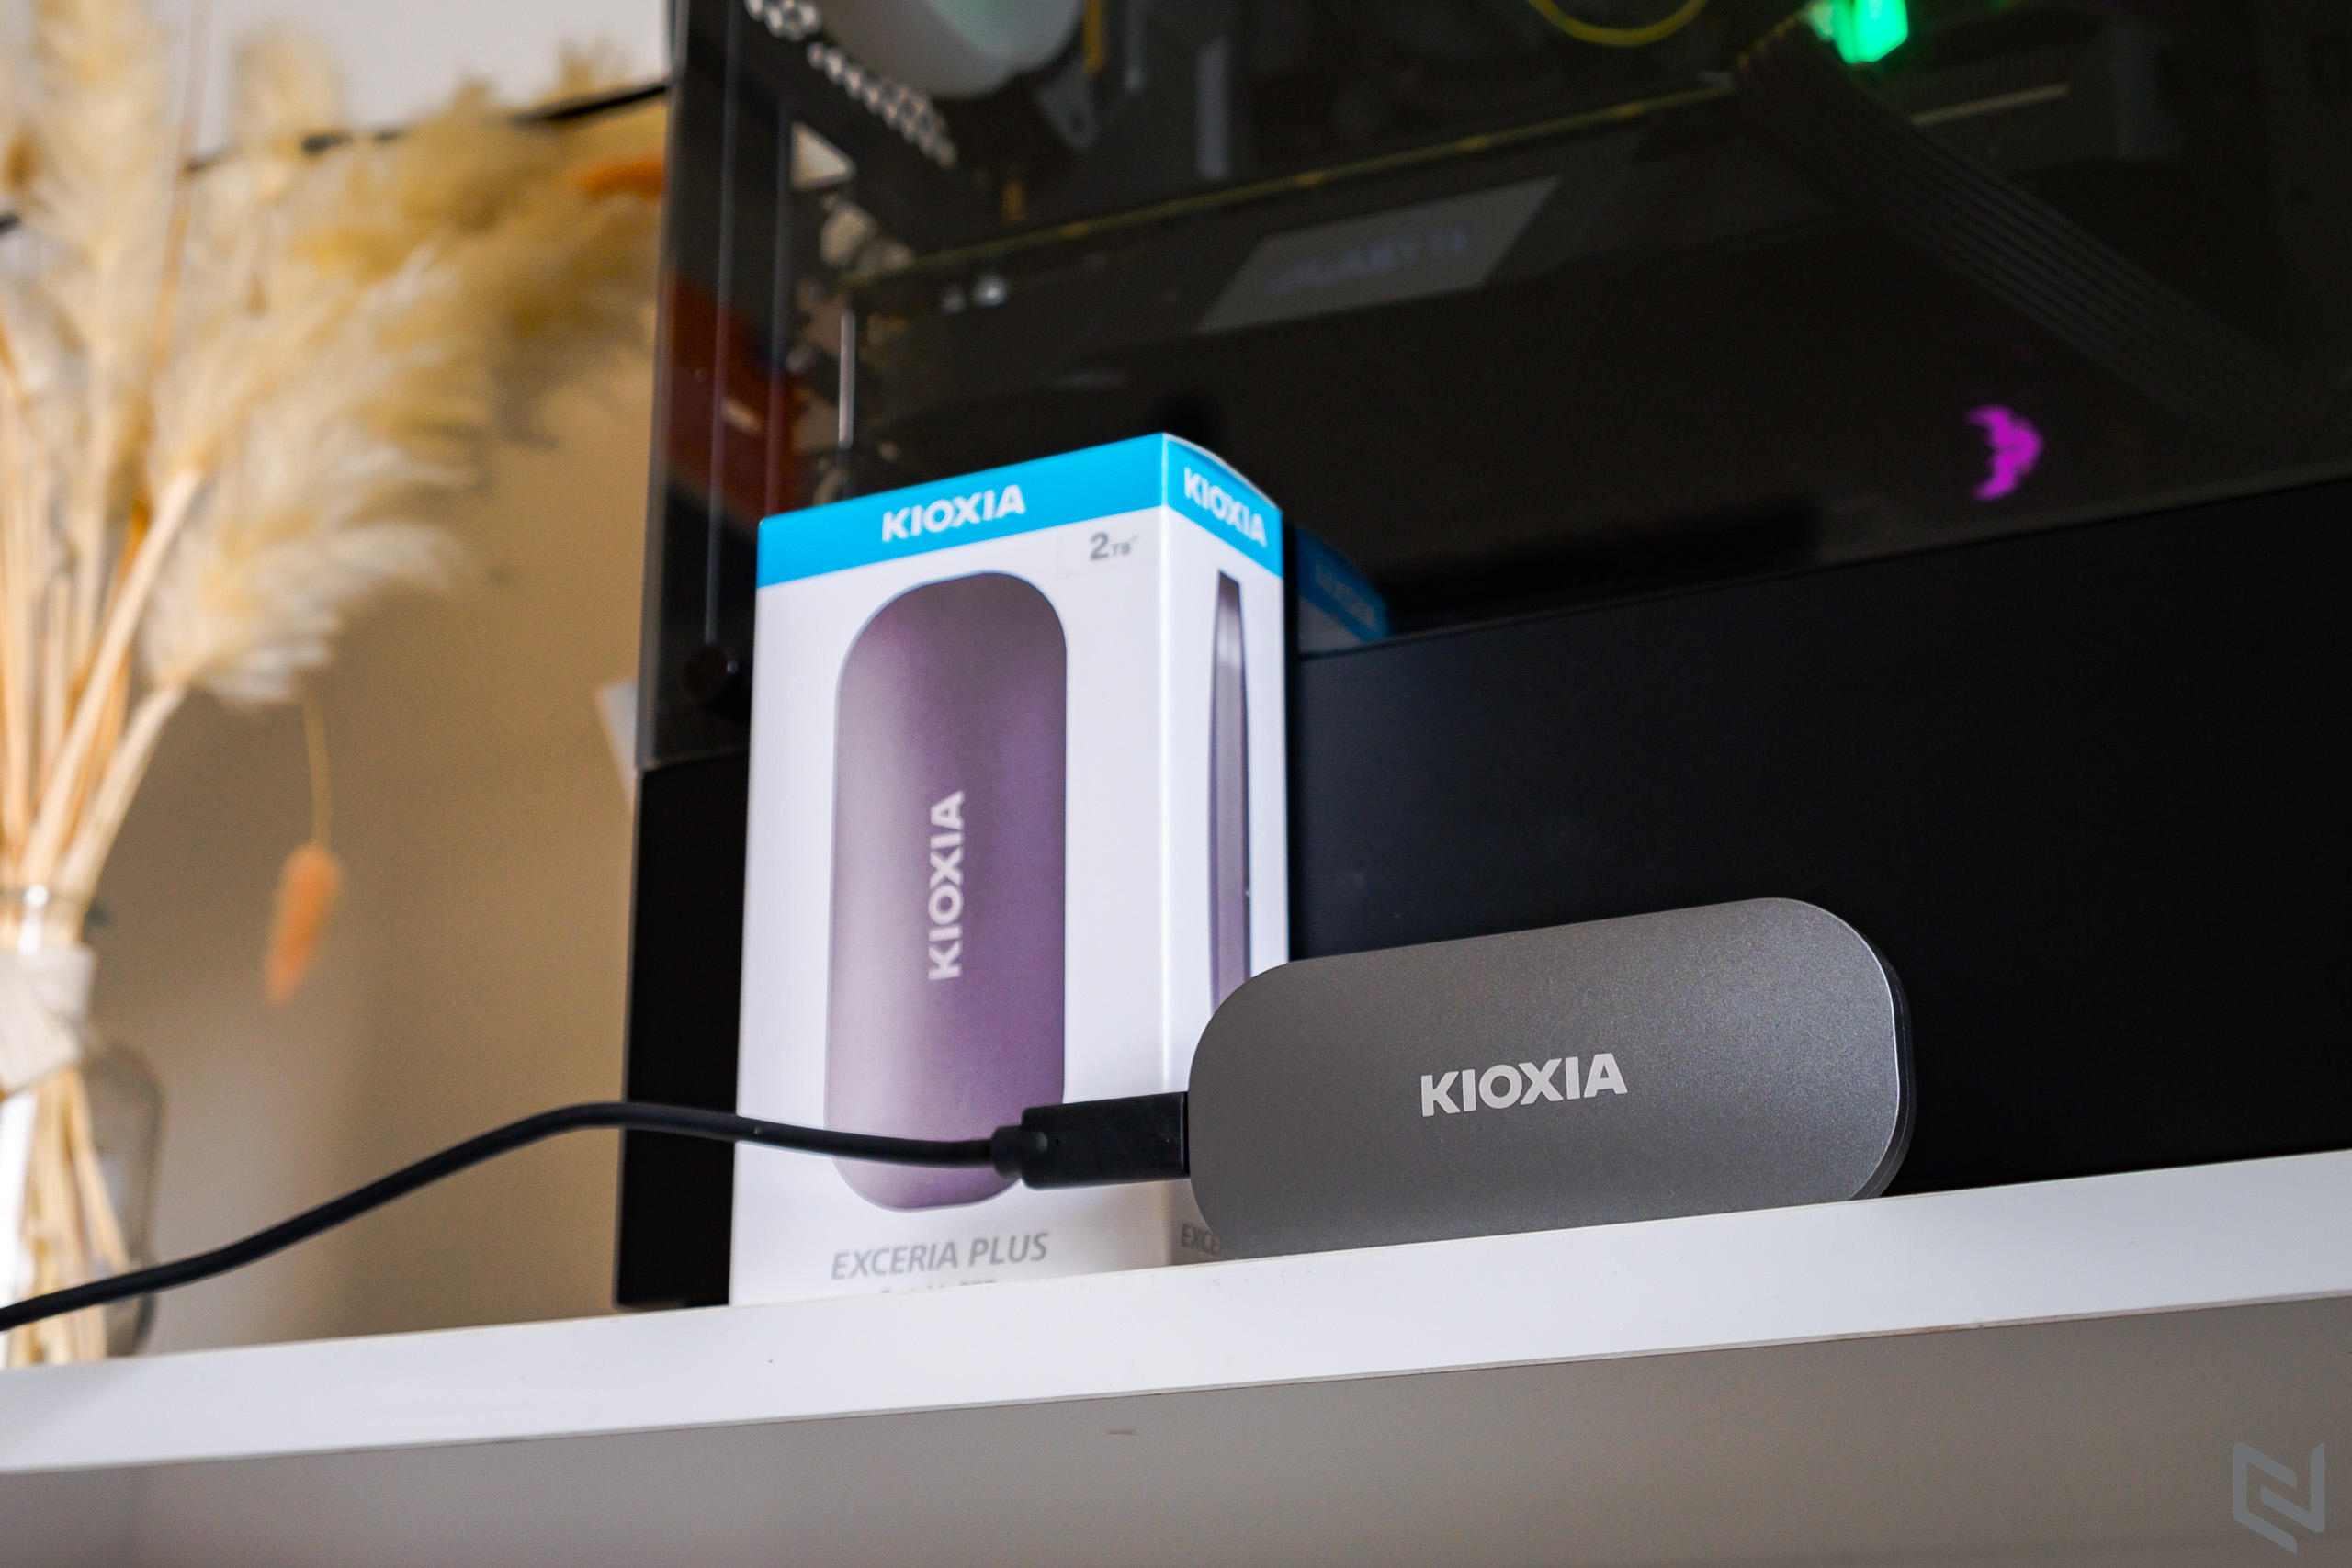 Trên tay SSD di động Kioxia Exceria Plus cùng USB TransMemory U366, bộ đôi hoàn hảo cho công việc cần lưu trữ di động